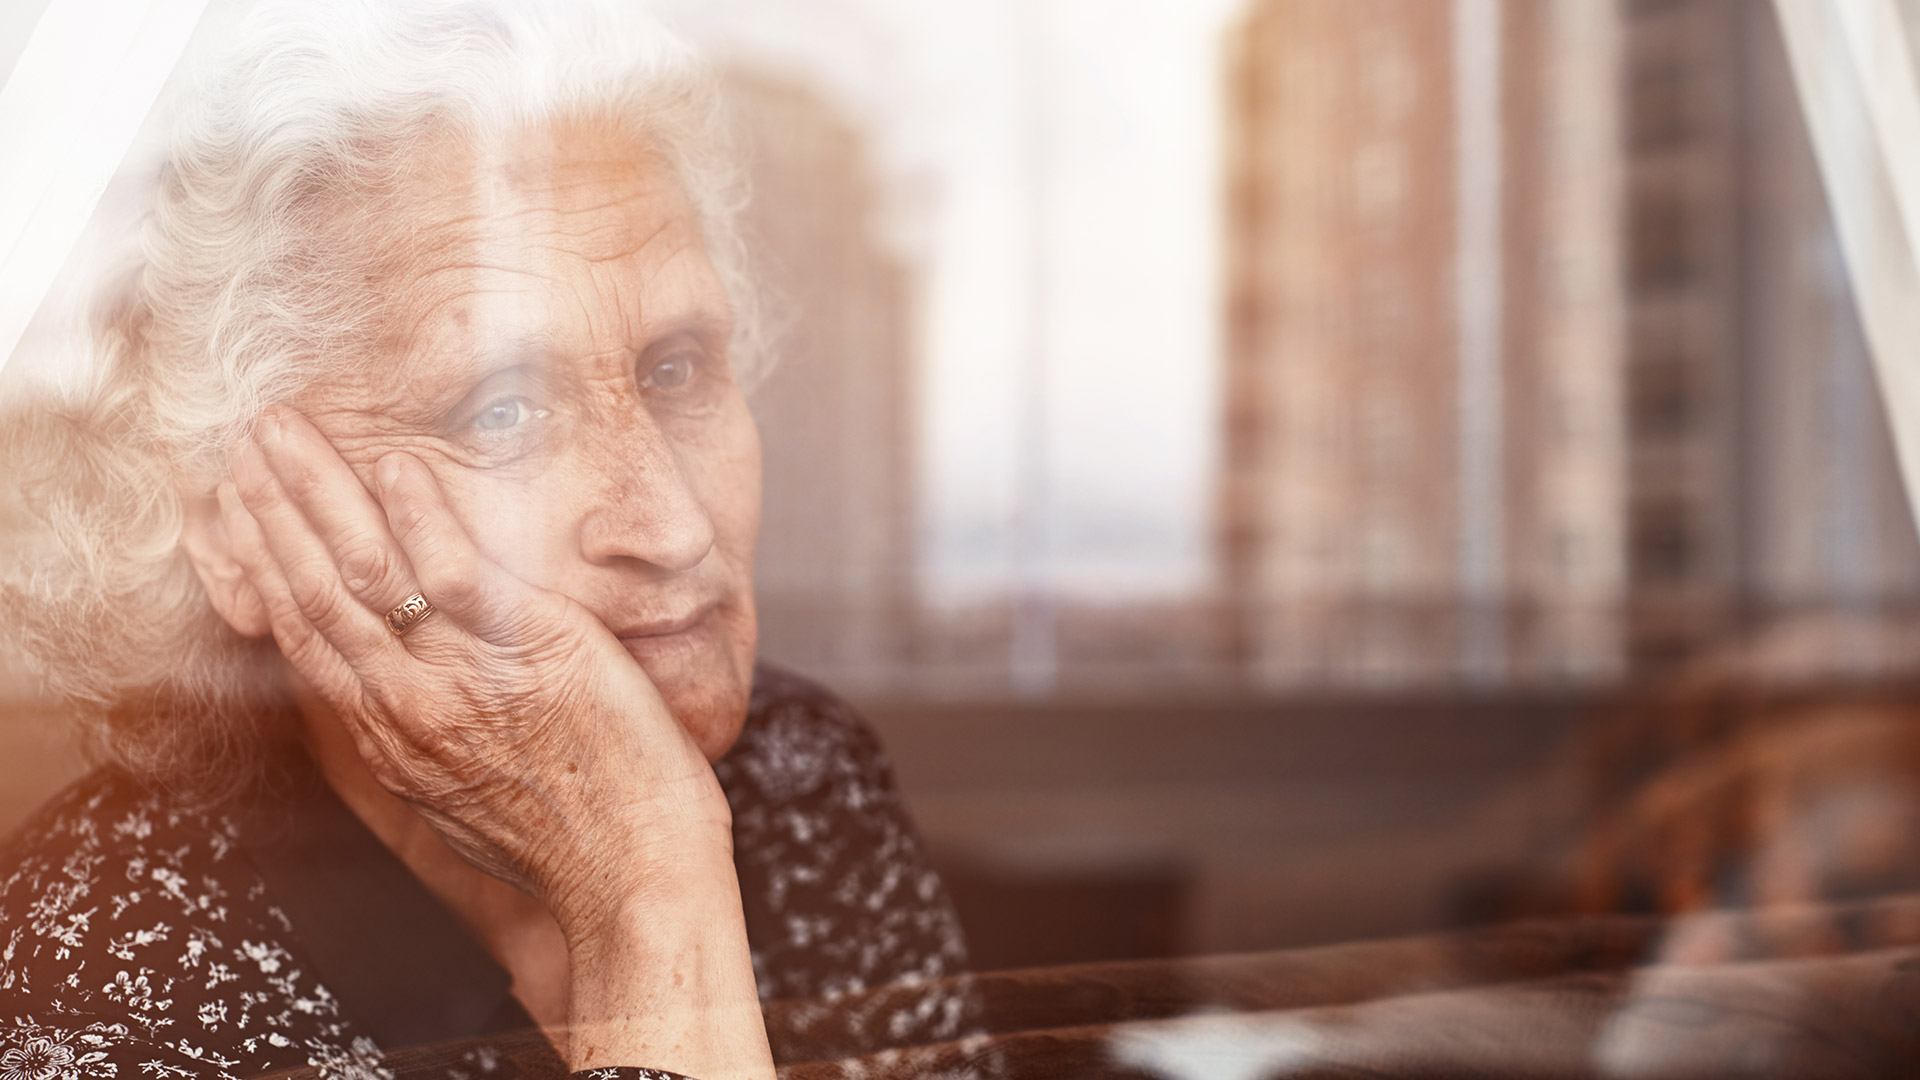 Estos datos no sólo sugieren un papel causal del aumento de los niveles exagerados de la enfermedad de Alzheimer durante la menopausia, sino que también revelan una oportunidad para tratar dicha enfermedad